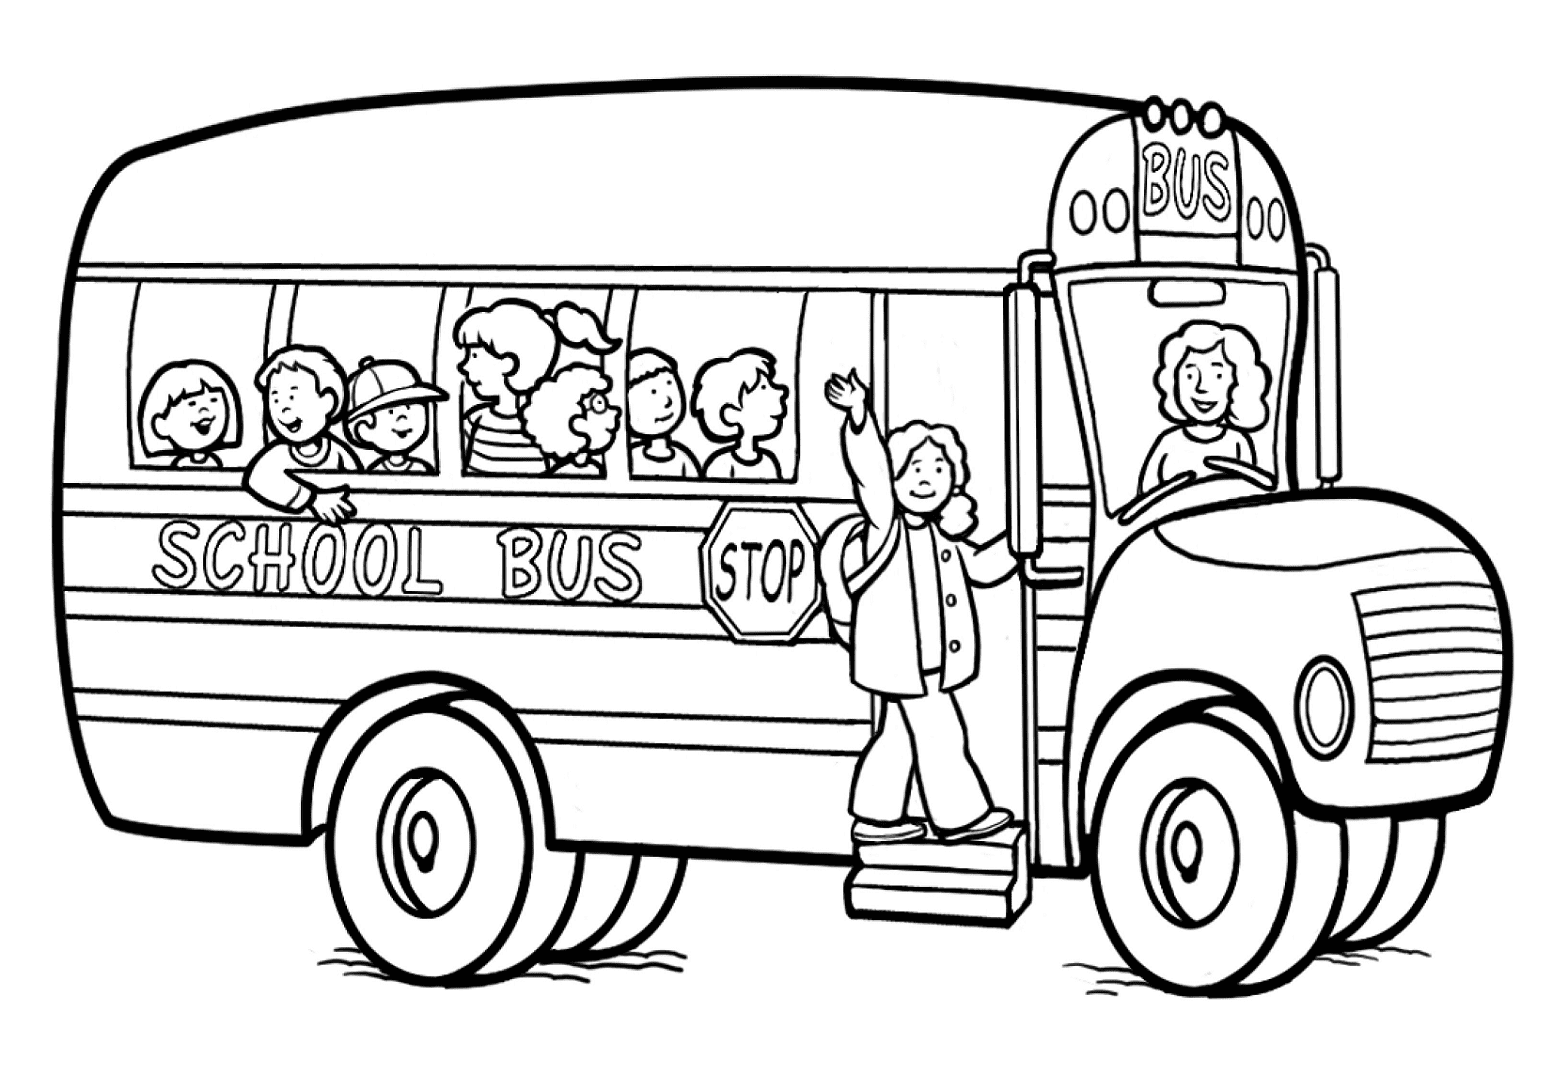 Изображение школьного автобуса из школьного автобуса